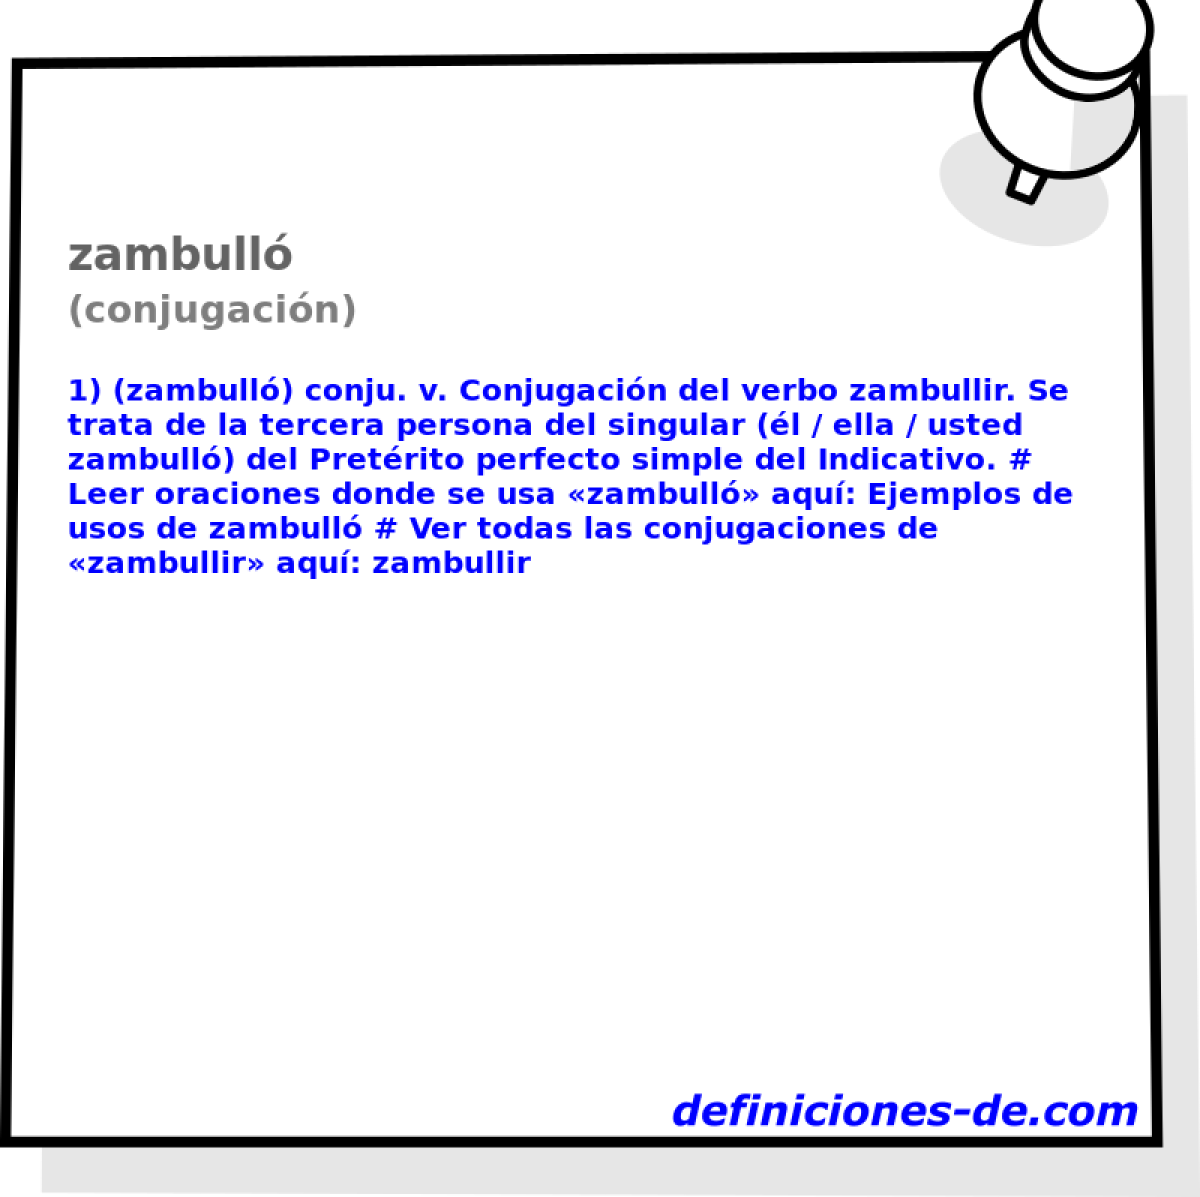 zambull (conjugacin)